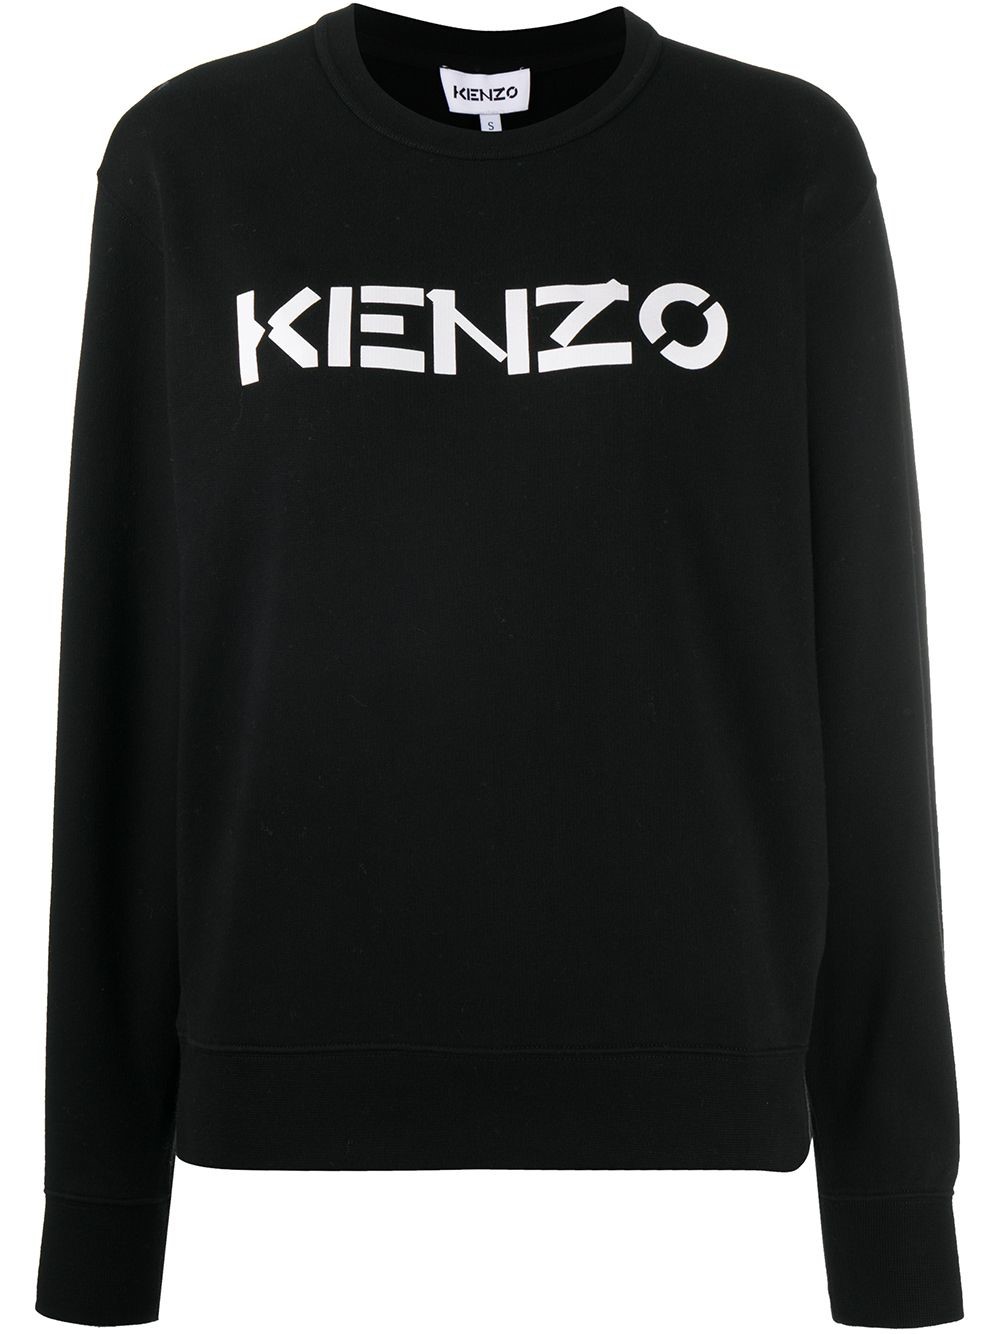 Kenzo Logo Sweater Flash Sales, 55% OFF | www.ingeniovirtual.com